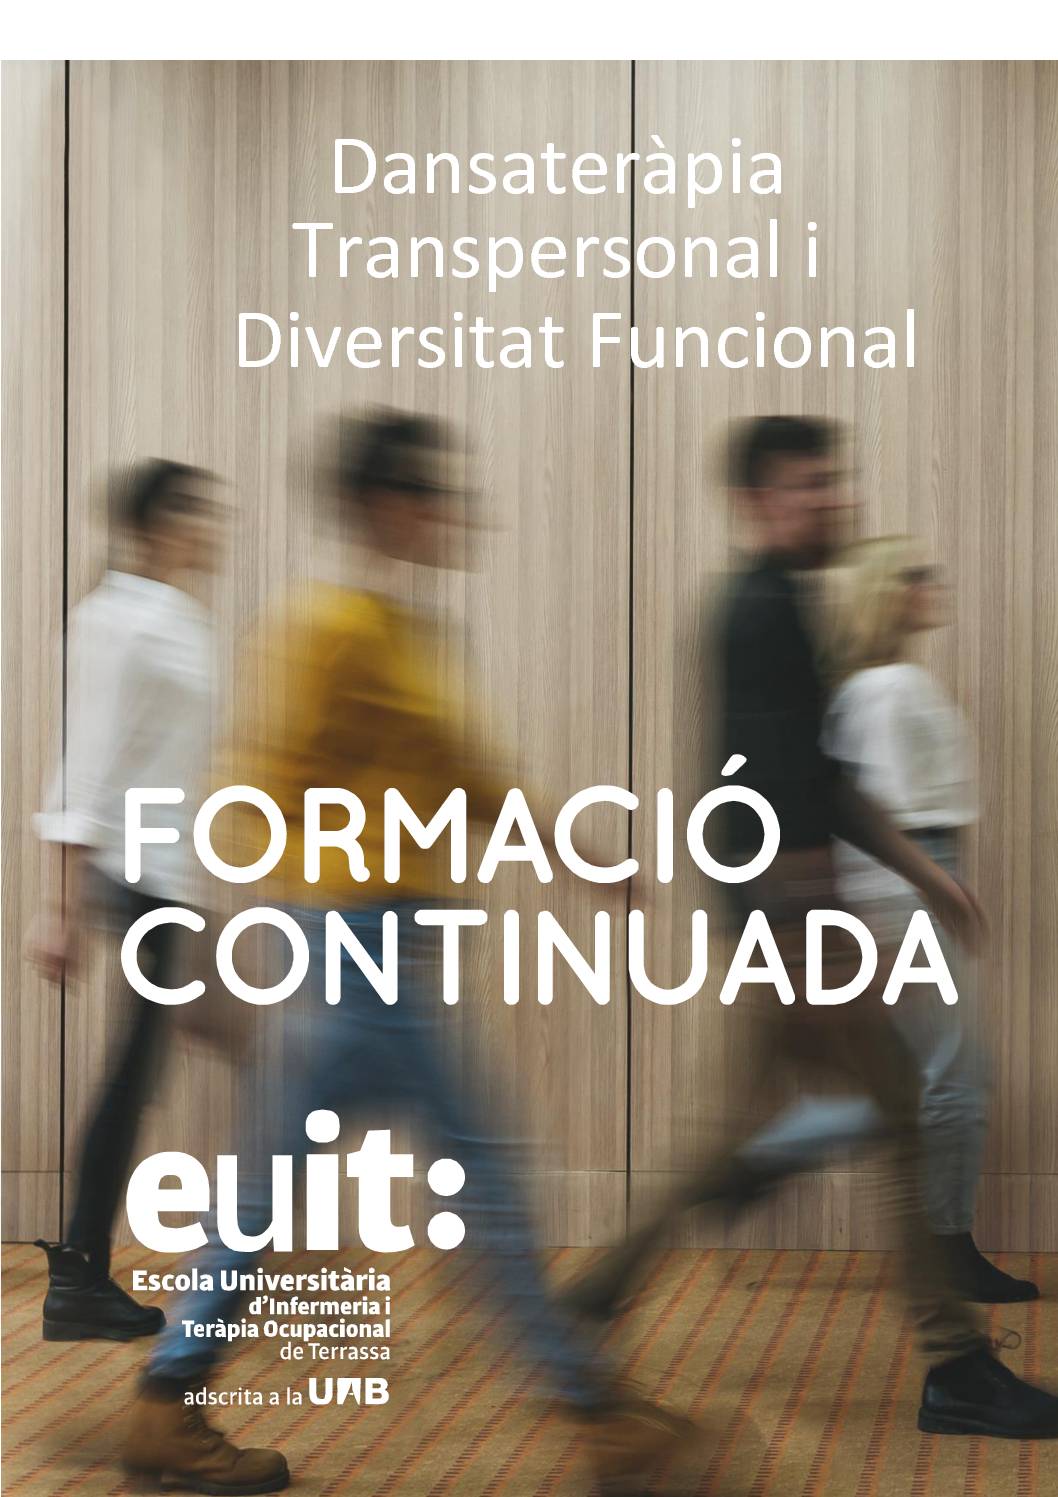 EUIT "Dansateràpia Transpersonal i Diversitat Funcional"